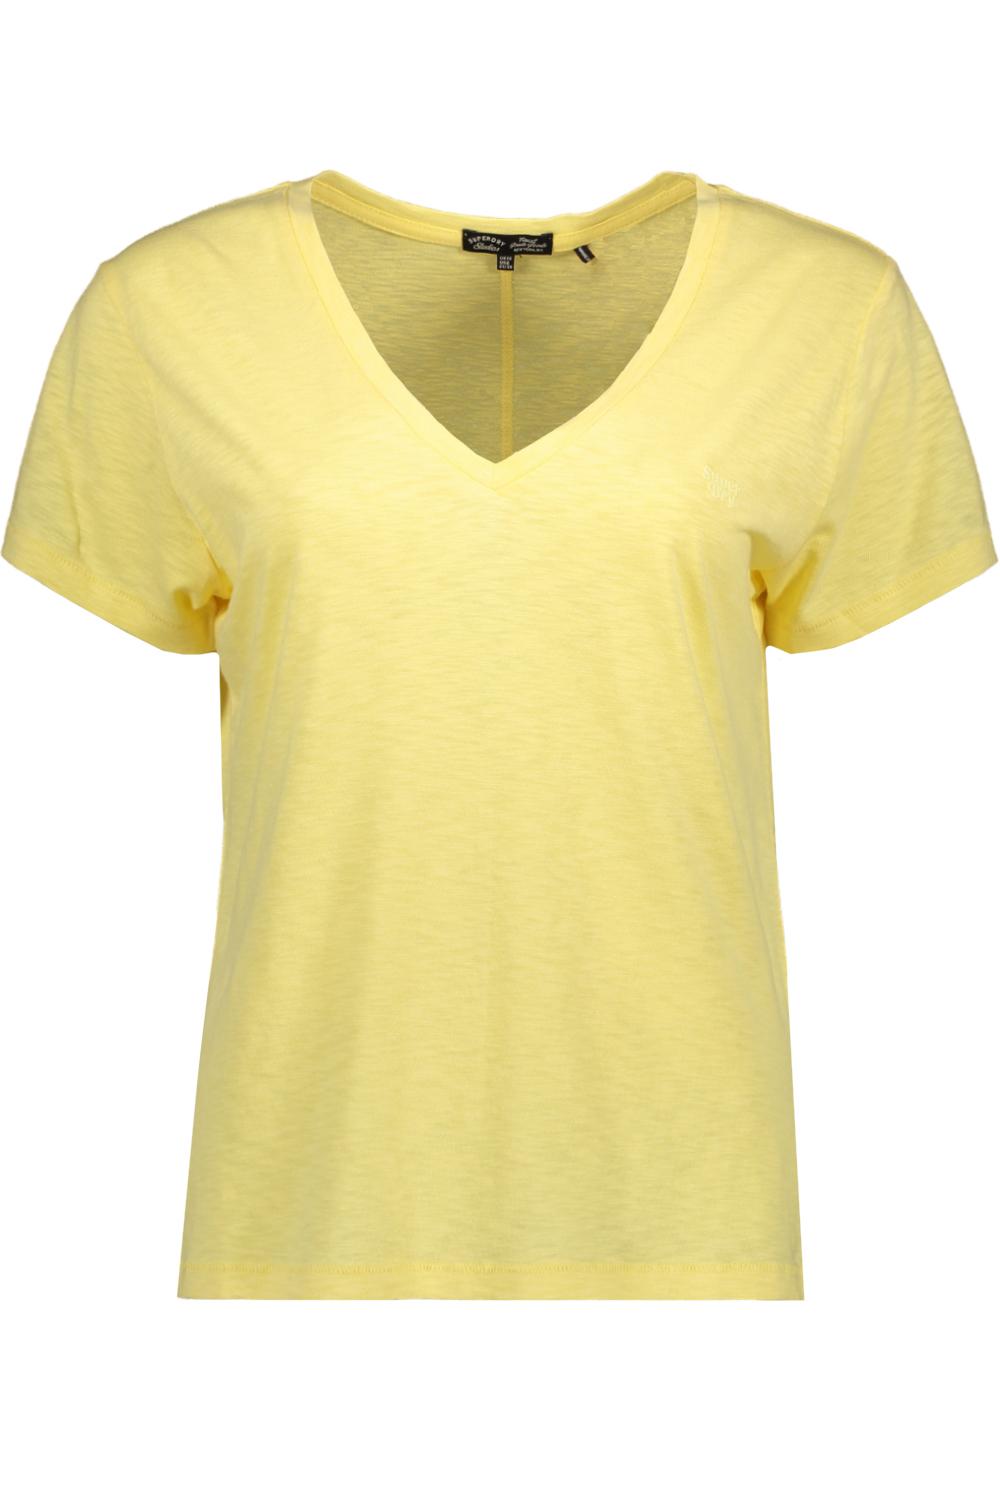 studios slub emb vee tee superdry pale w1011181a qlc yellow t-shirt